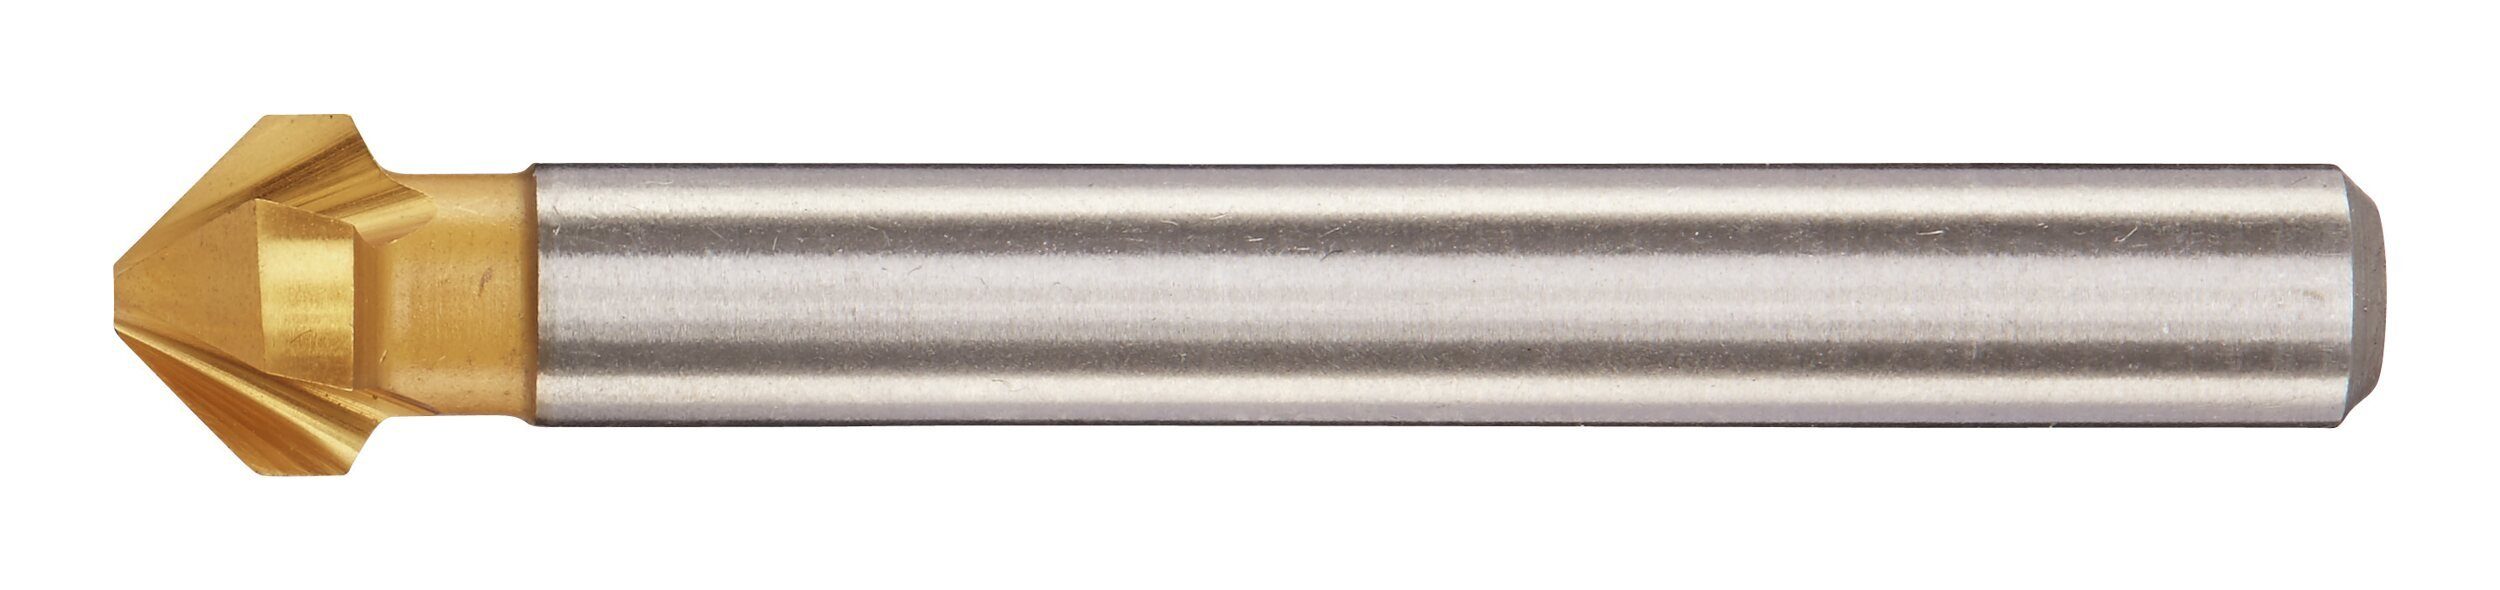 fortis TiN D335C 16,5 HSS 90G mm Kegelsenker Metallbohrer,